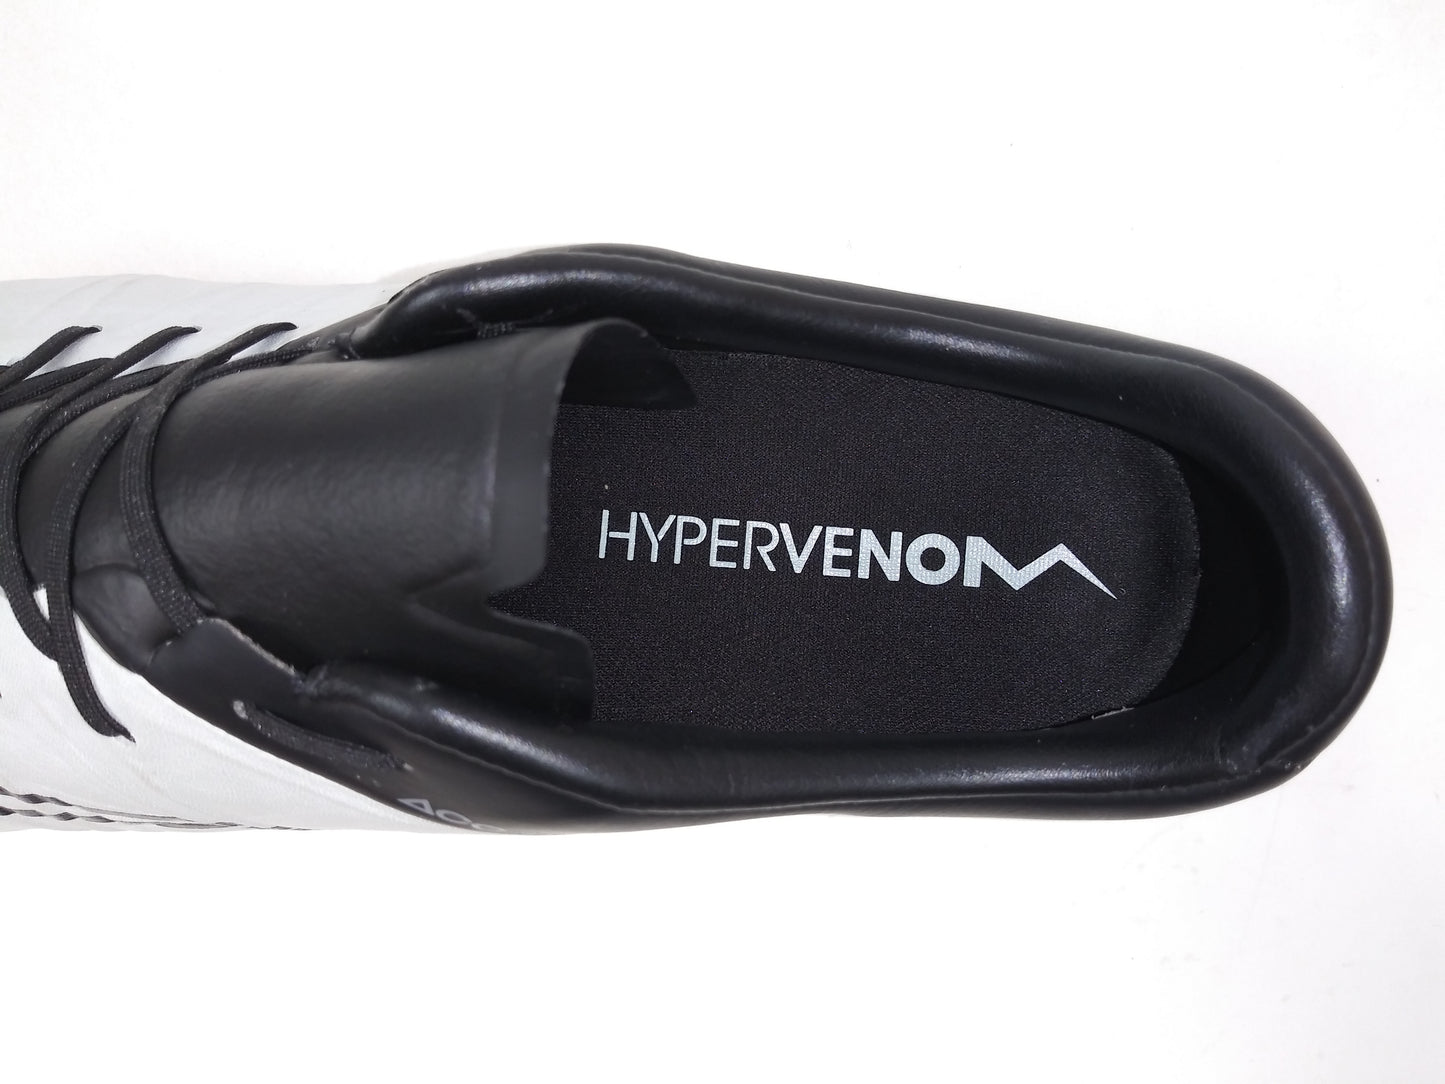 Nike Hypervenom Phinish FG LTHR White Black